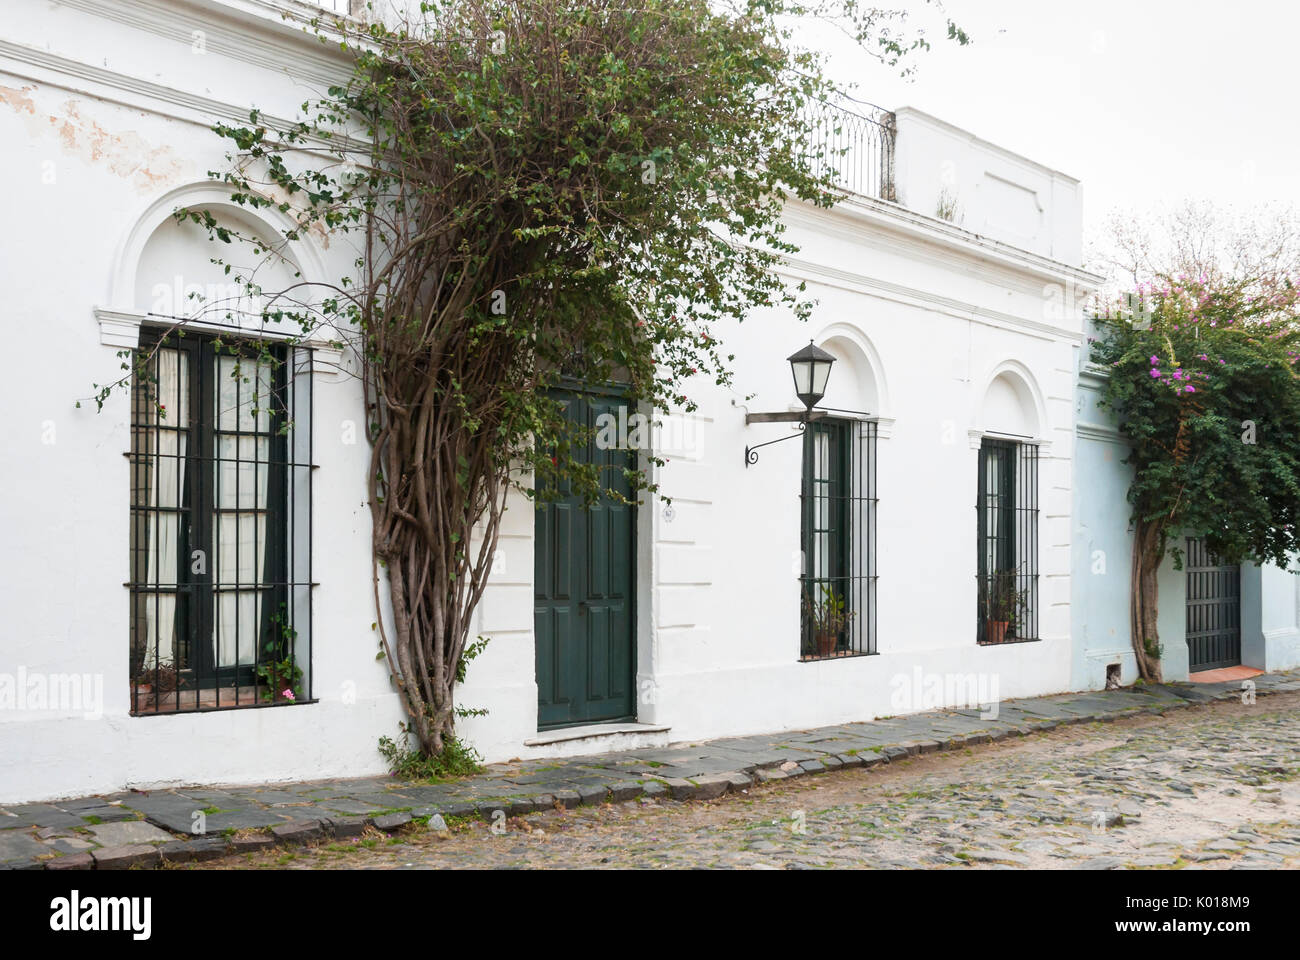 Koloniale Architektur in den gepflasterten Straßen von Colonia del Sacramento, Uruguay. Weltkulturerbe der UNESCO Stockfoto